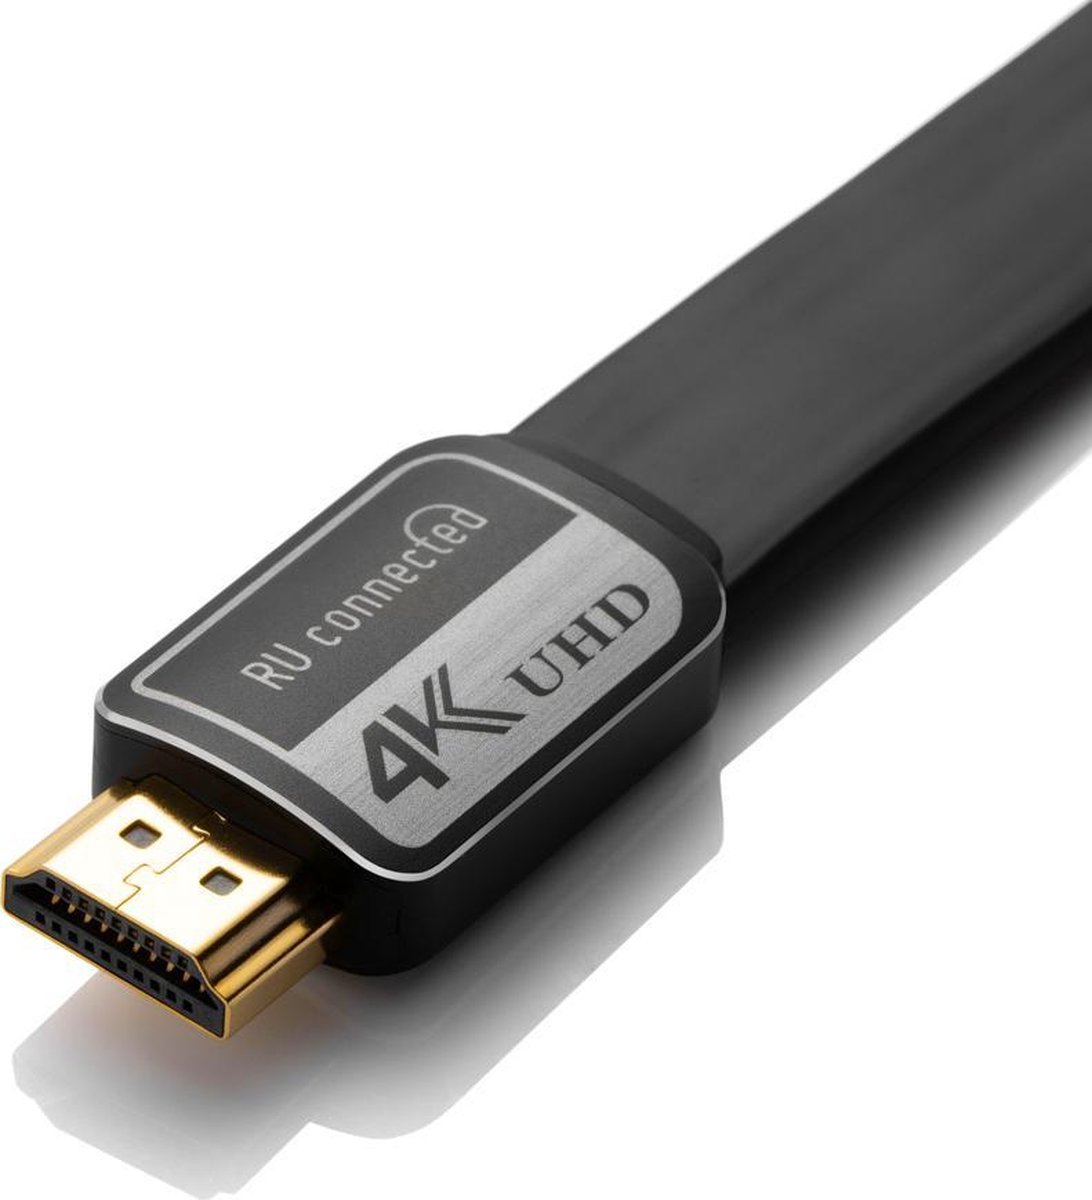 HDMI kabel 4K - 1,5 meter - Beste voor 4K met ARC, HDR, 4:4:4 bij 60 Hz |  bol.com